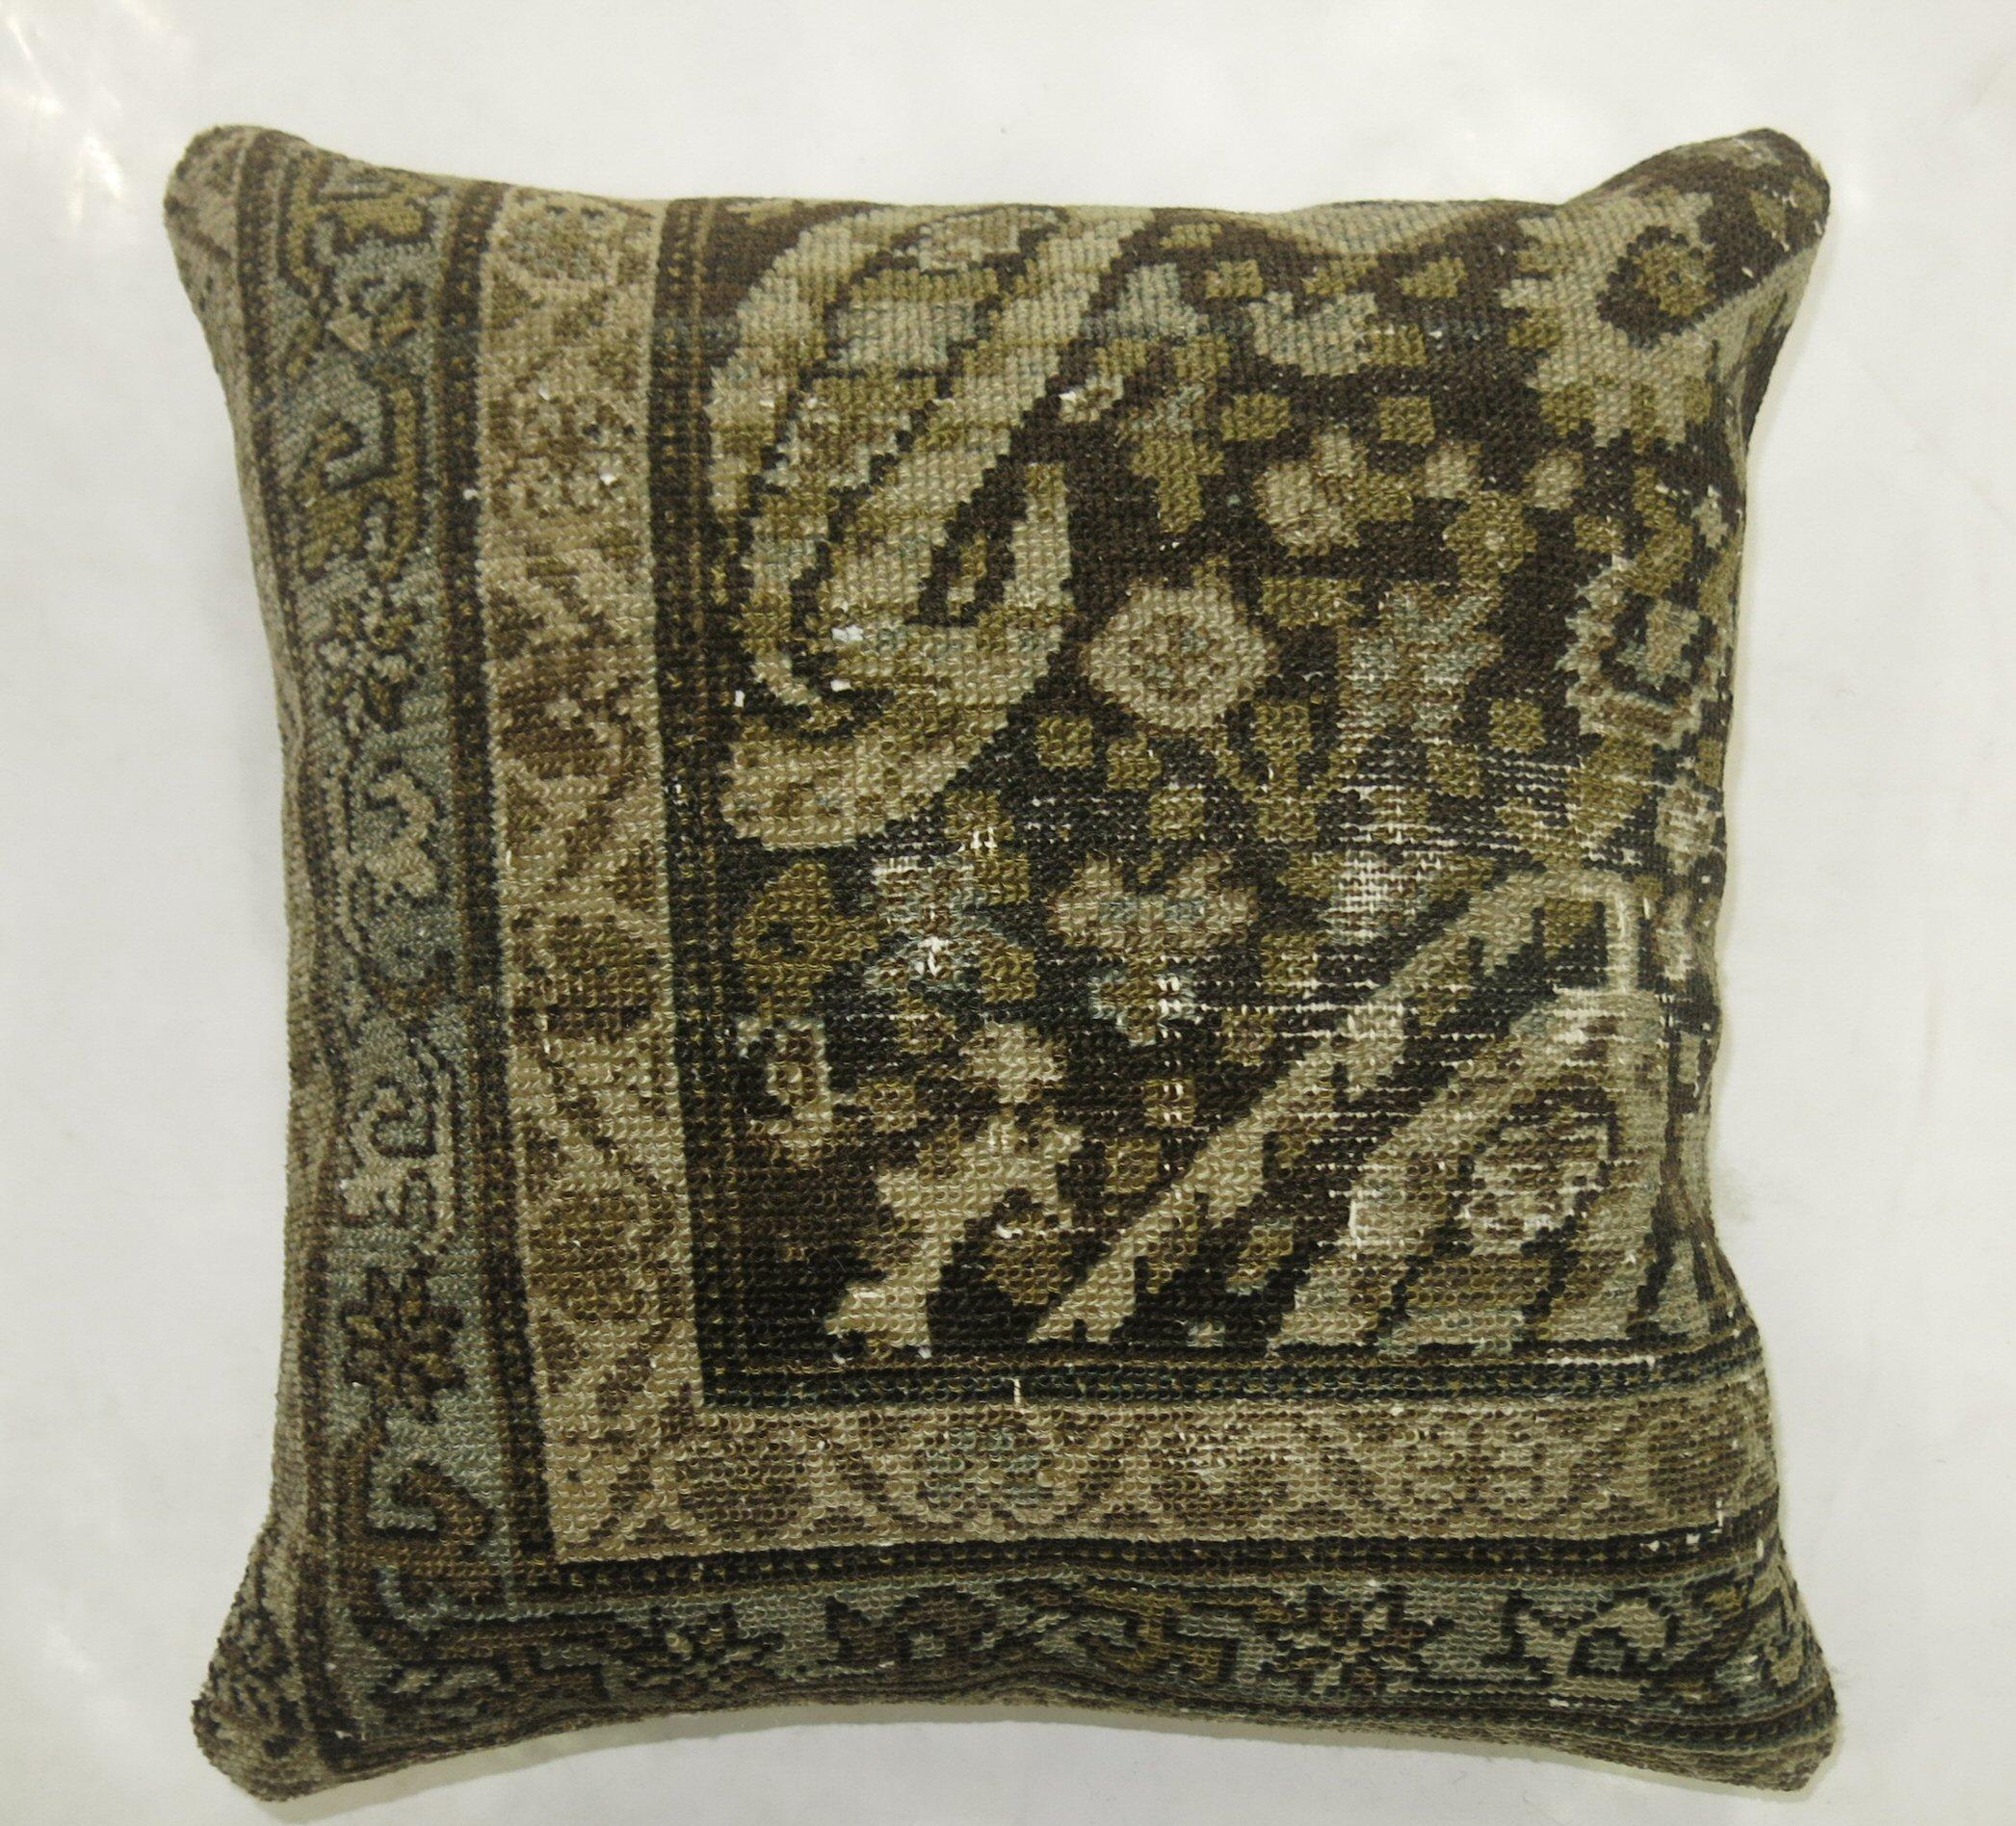 Kissen aus einem alten persischen Malayer-Teppich.

Maße: 16'' x 16''.